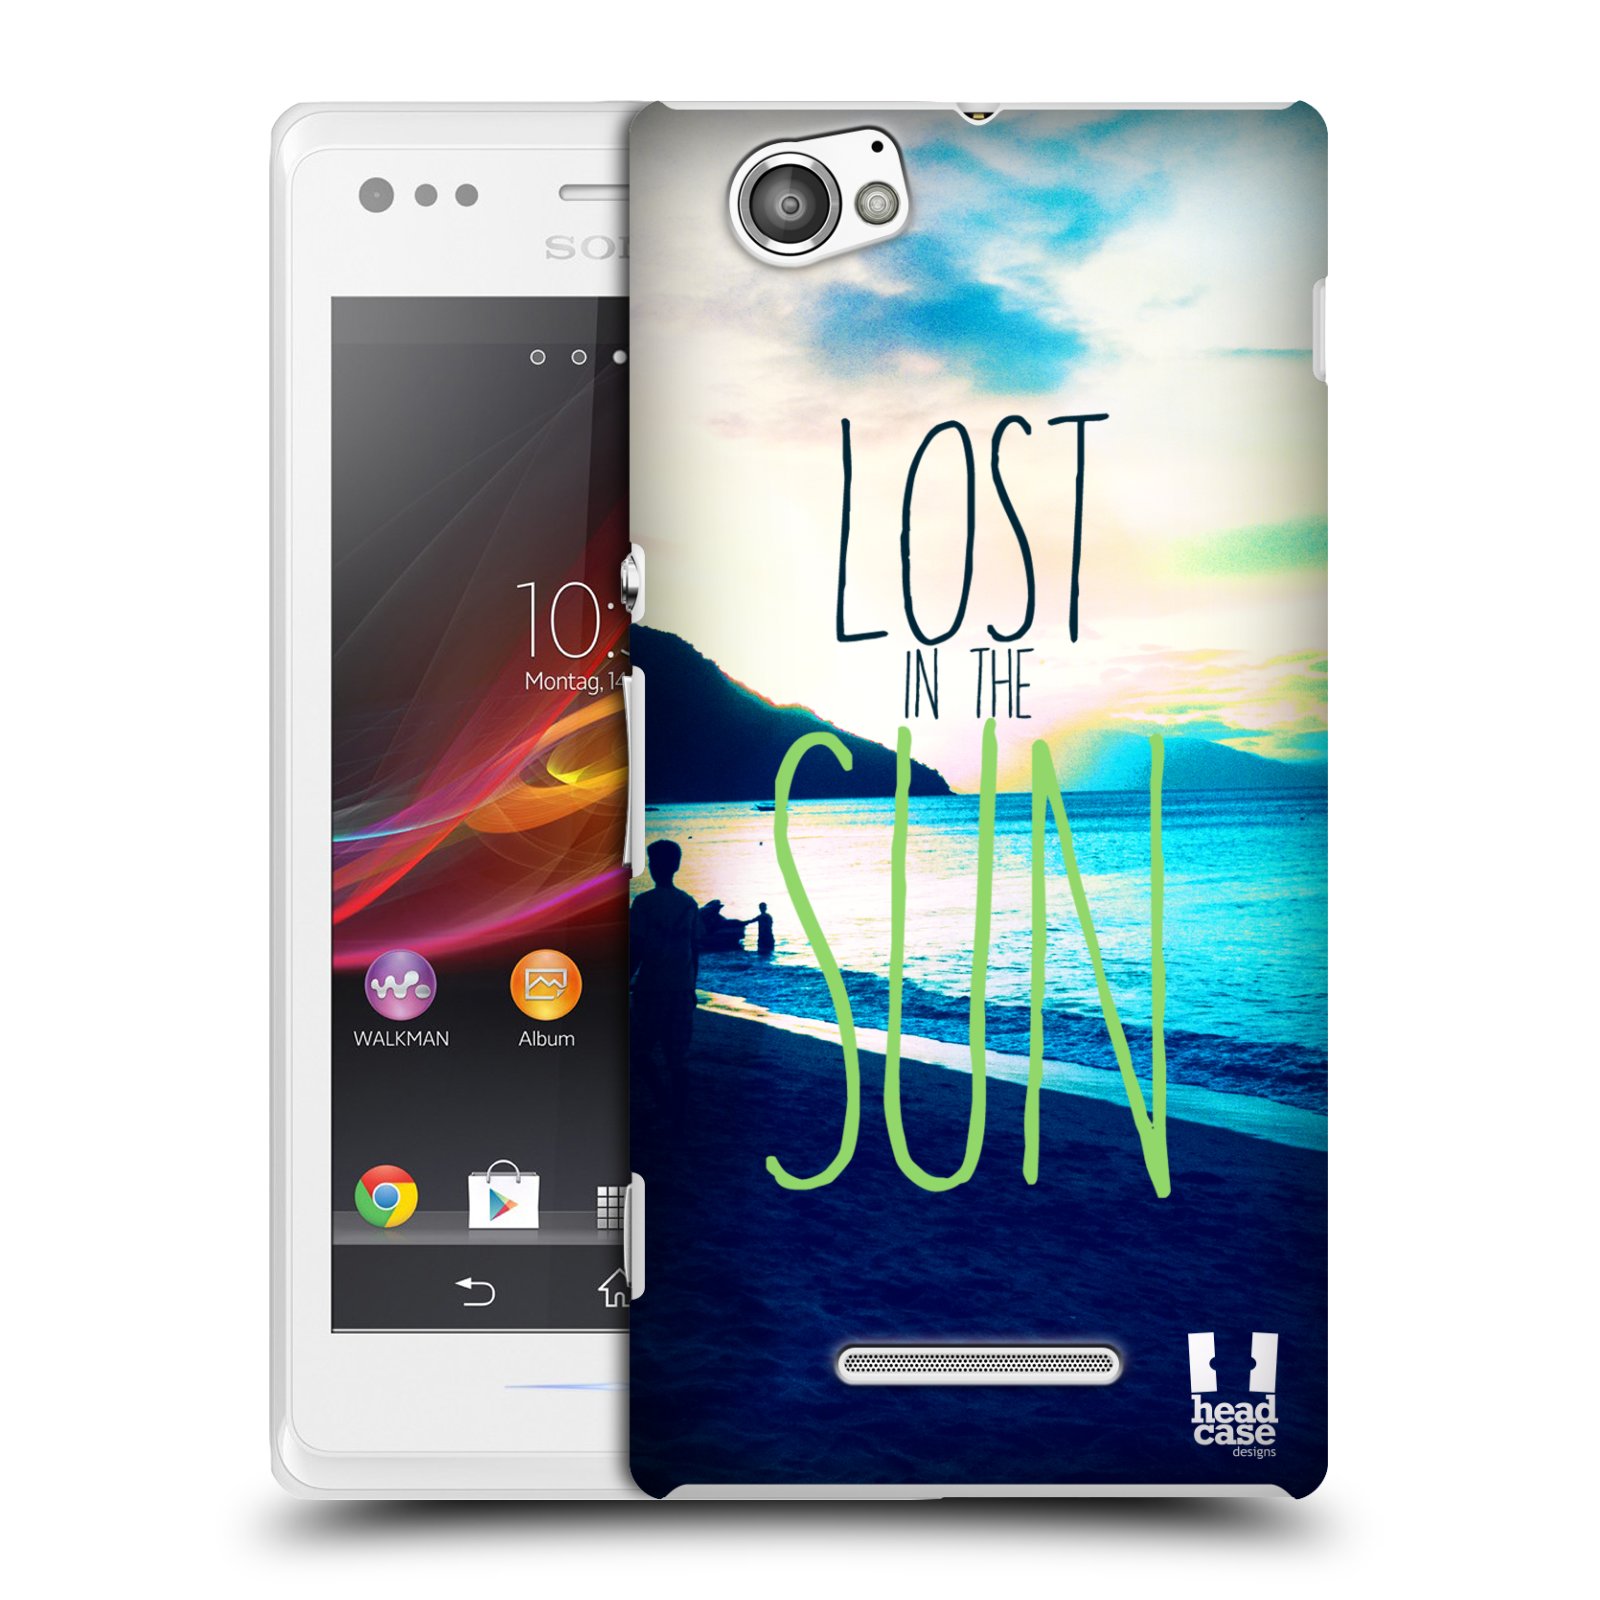 HEAD CASE plastový obal na mobil Sony Xperia M vzor Pozitivní vlny MODRÁ, moře, slunce a pláž LOST IN THE SUN